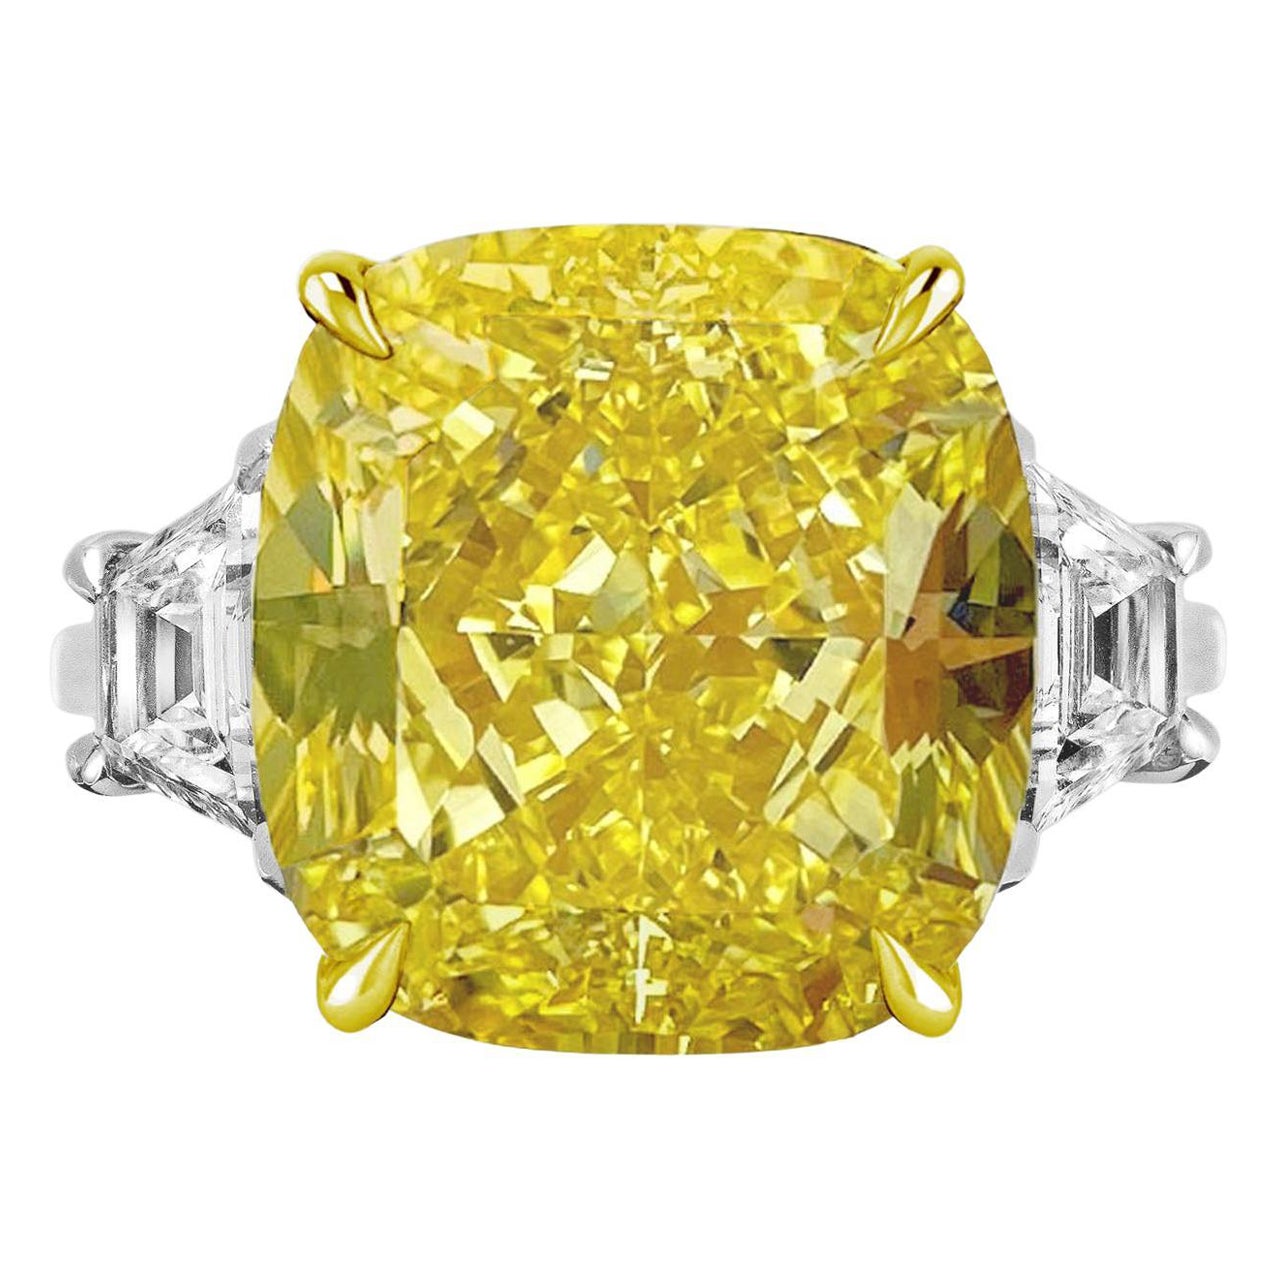 Hergestellt in Italien, GIA-zertifizierter 6 Karat Ausgefallener gelber Diamantring VVS2 Reinheit